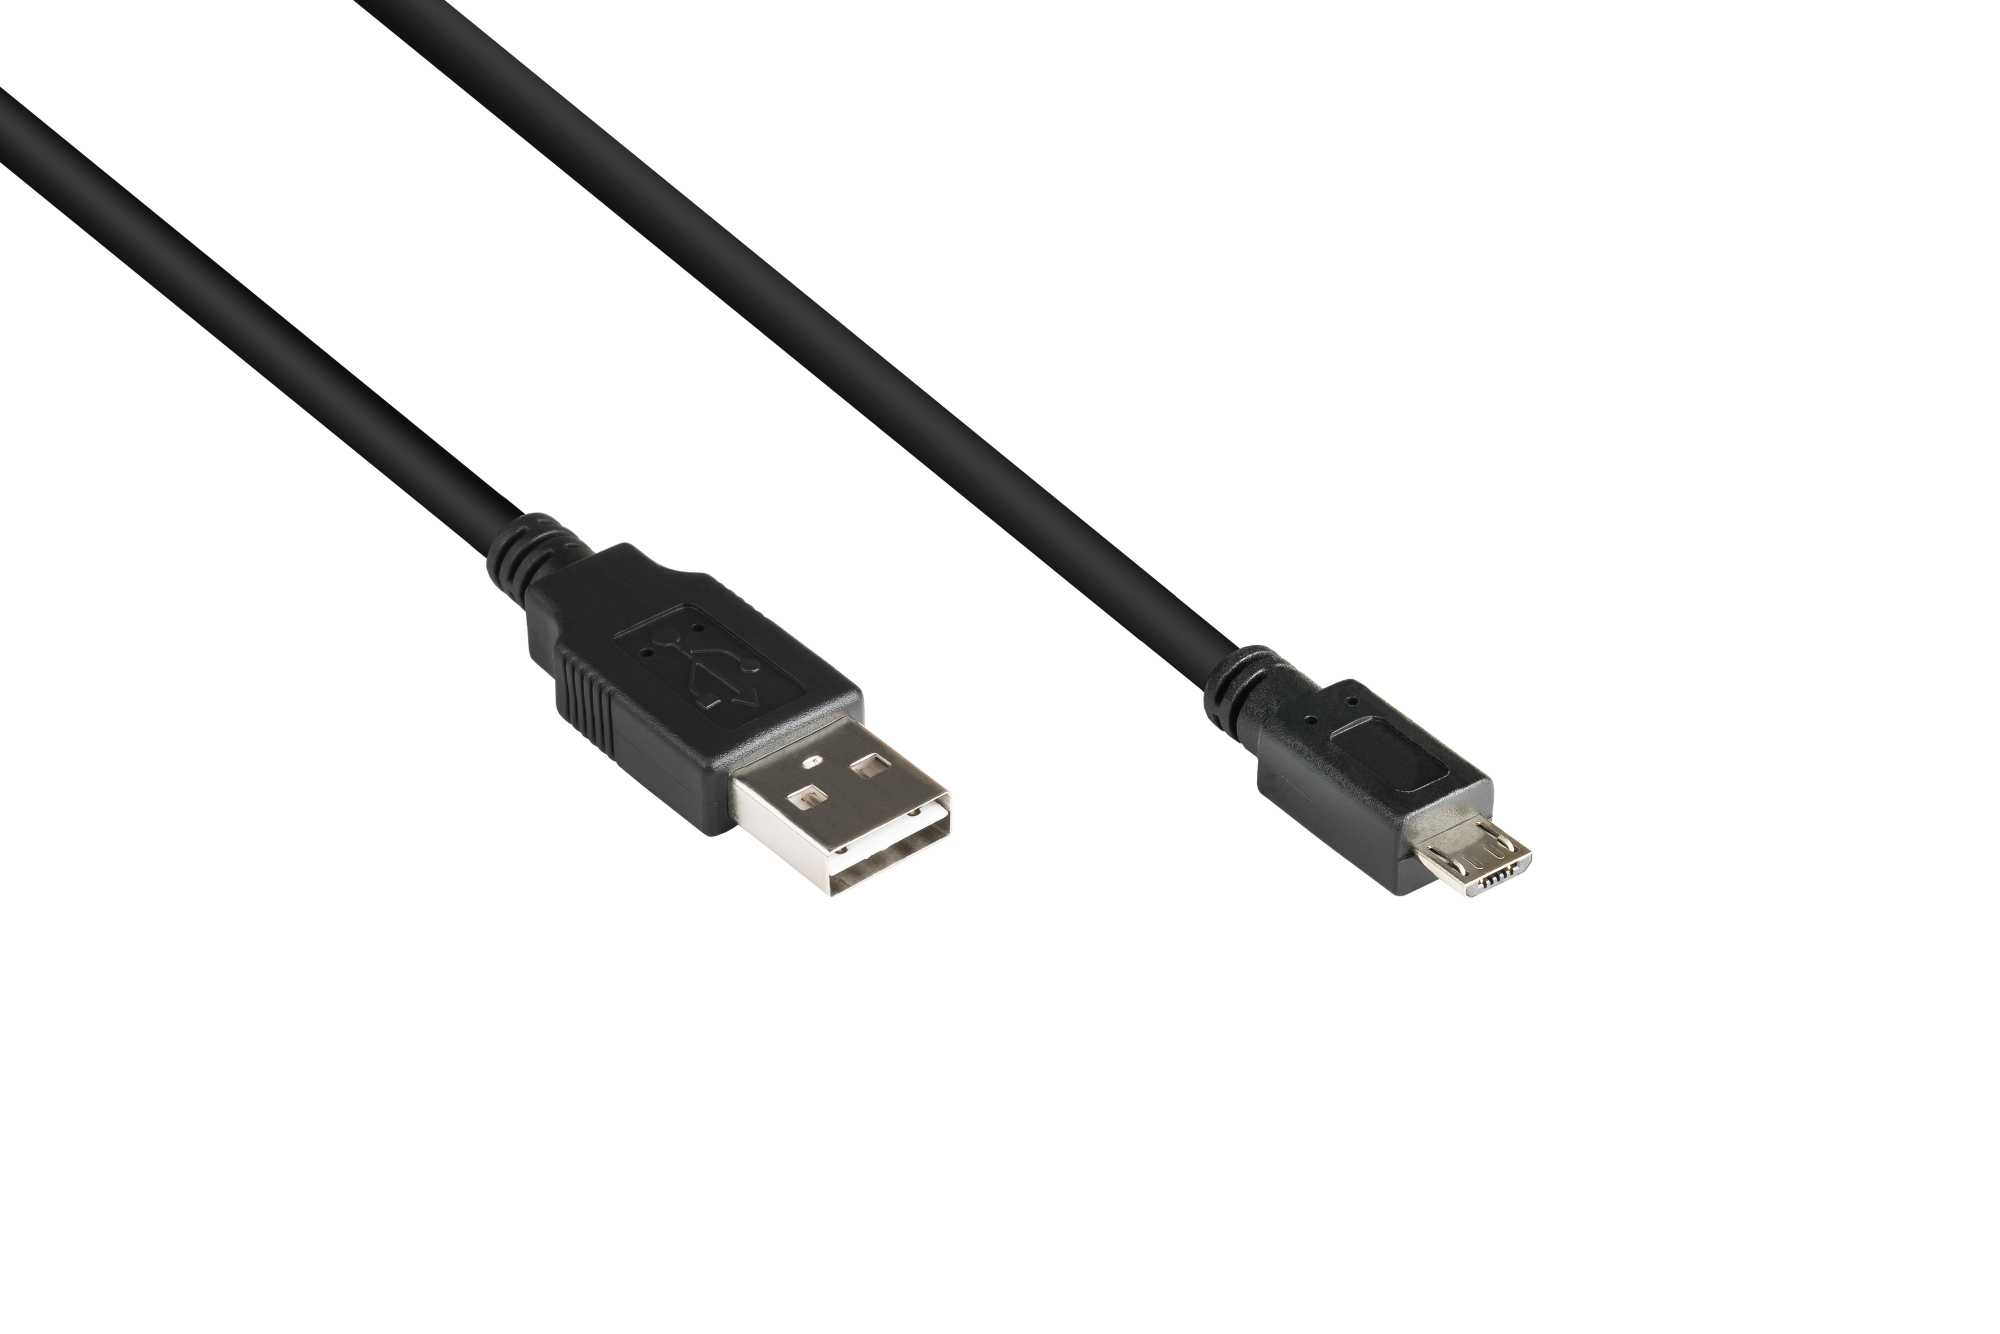 Anschlusskabel USB 2.0 EASY Stecker A an Stecker Micro B, schwarz, 0,5m